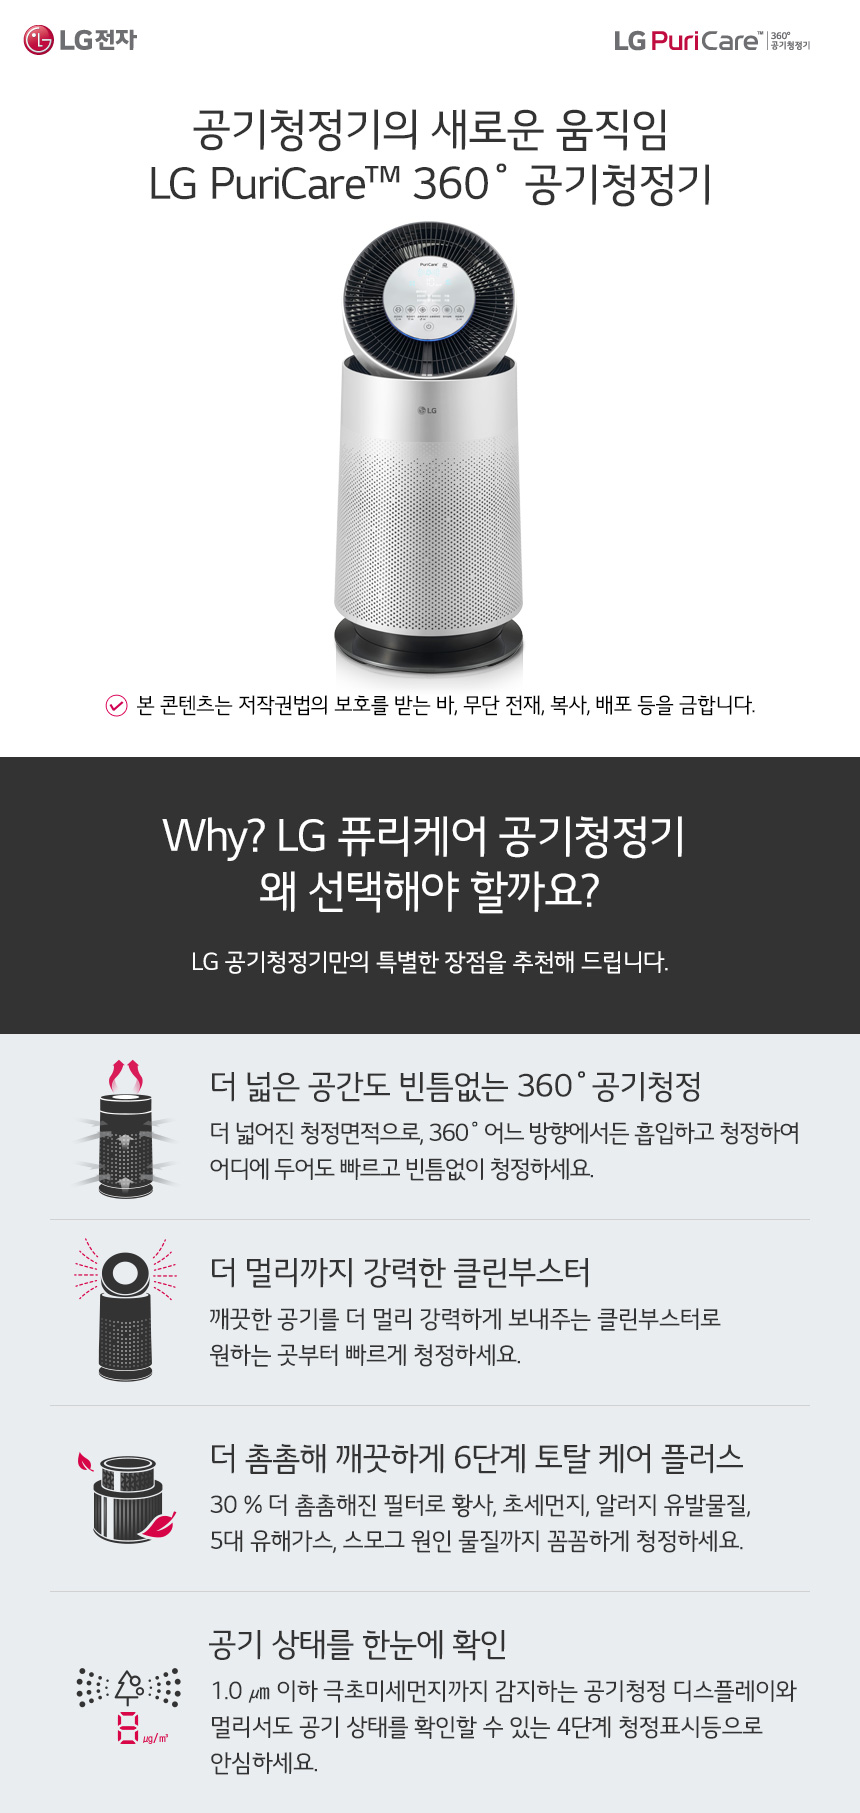 Why LG